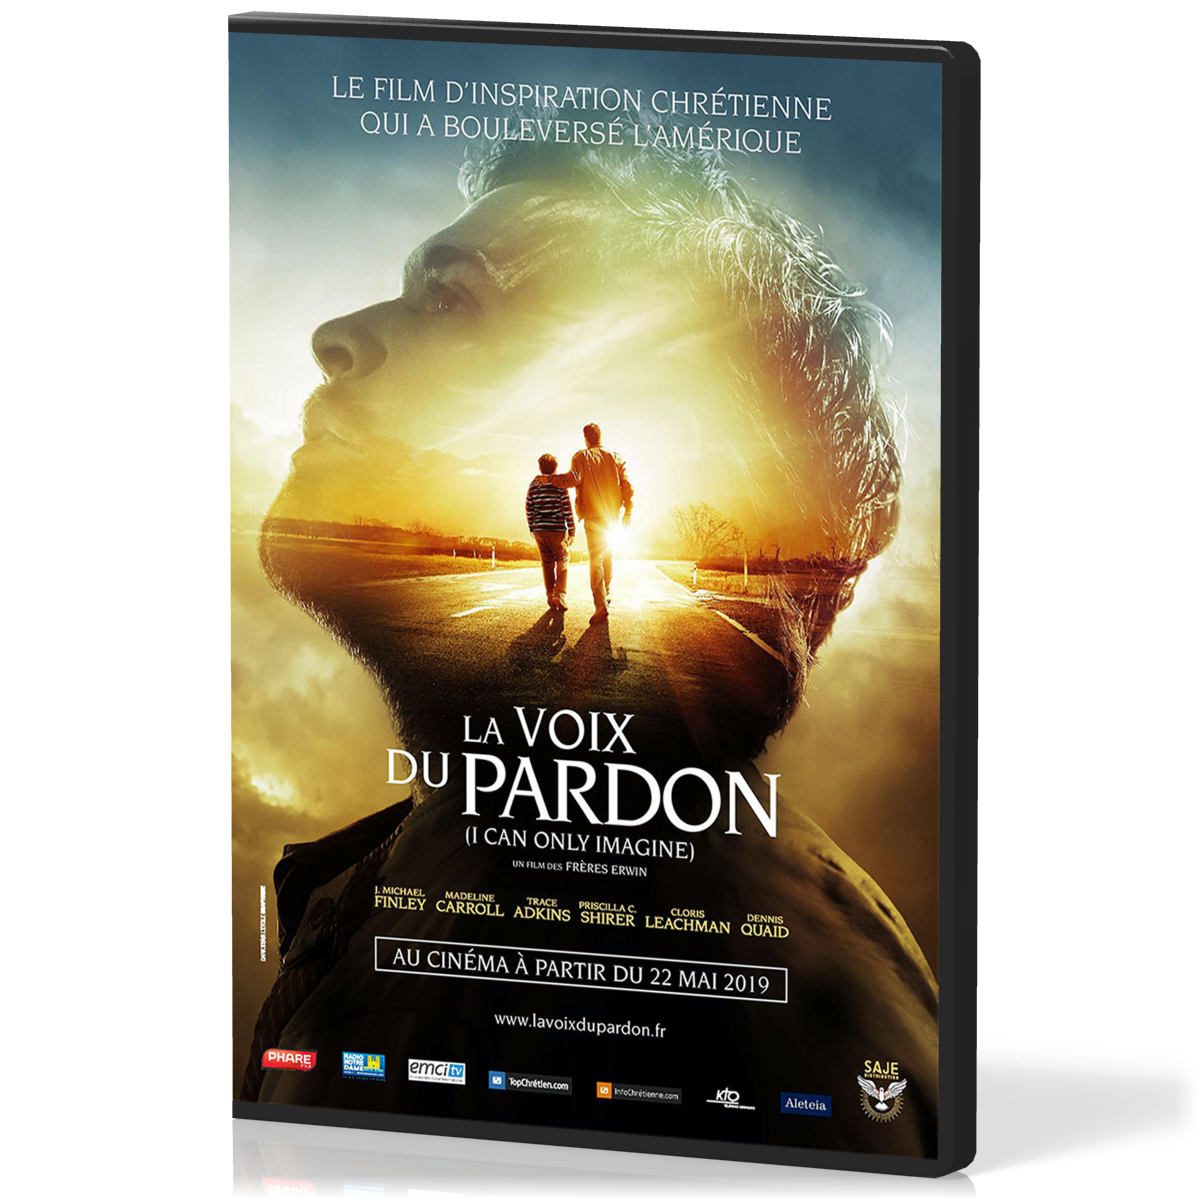 Voix du pardon (2018) [DVD] (La) - (I can only imagine)